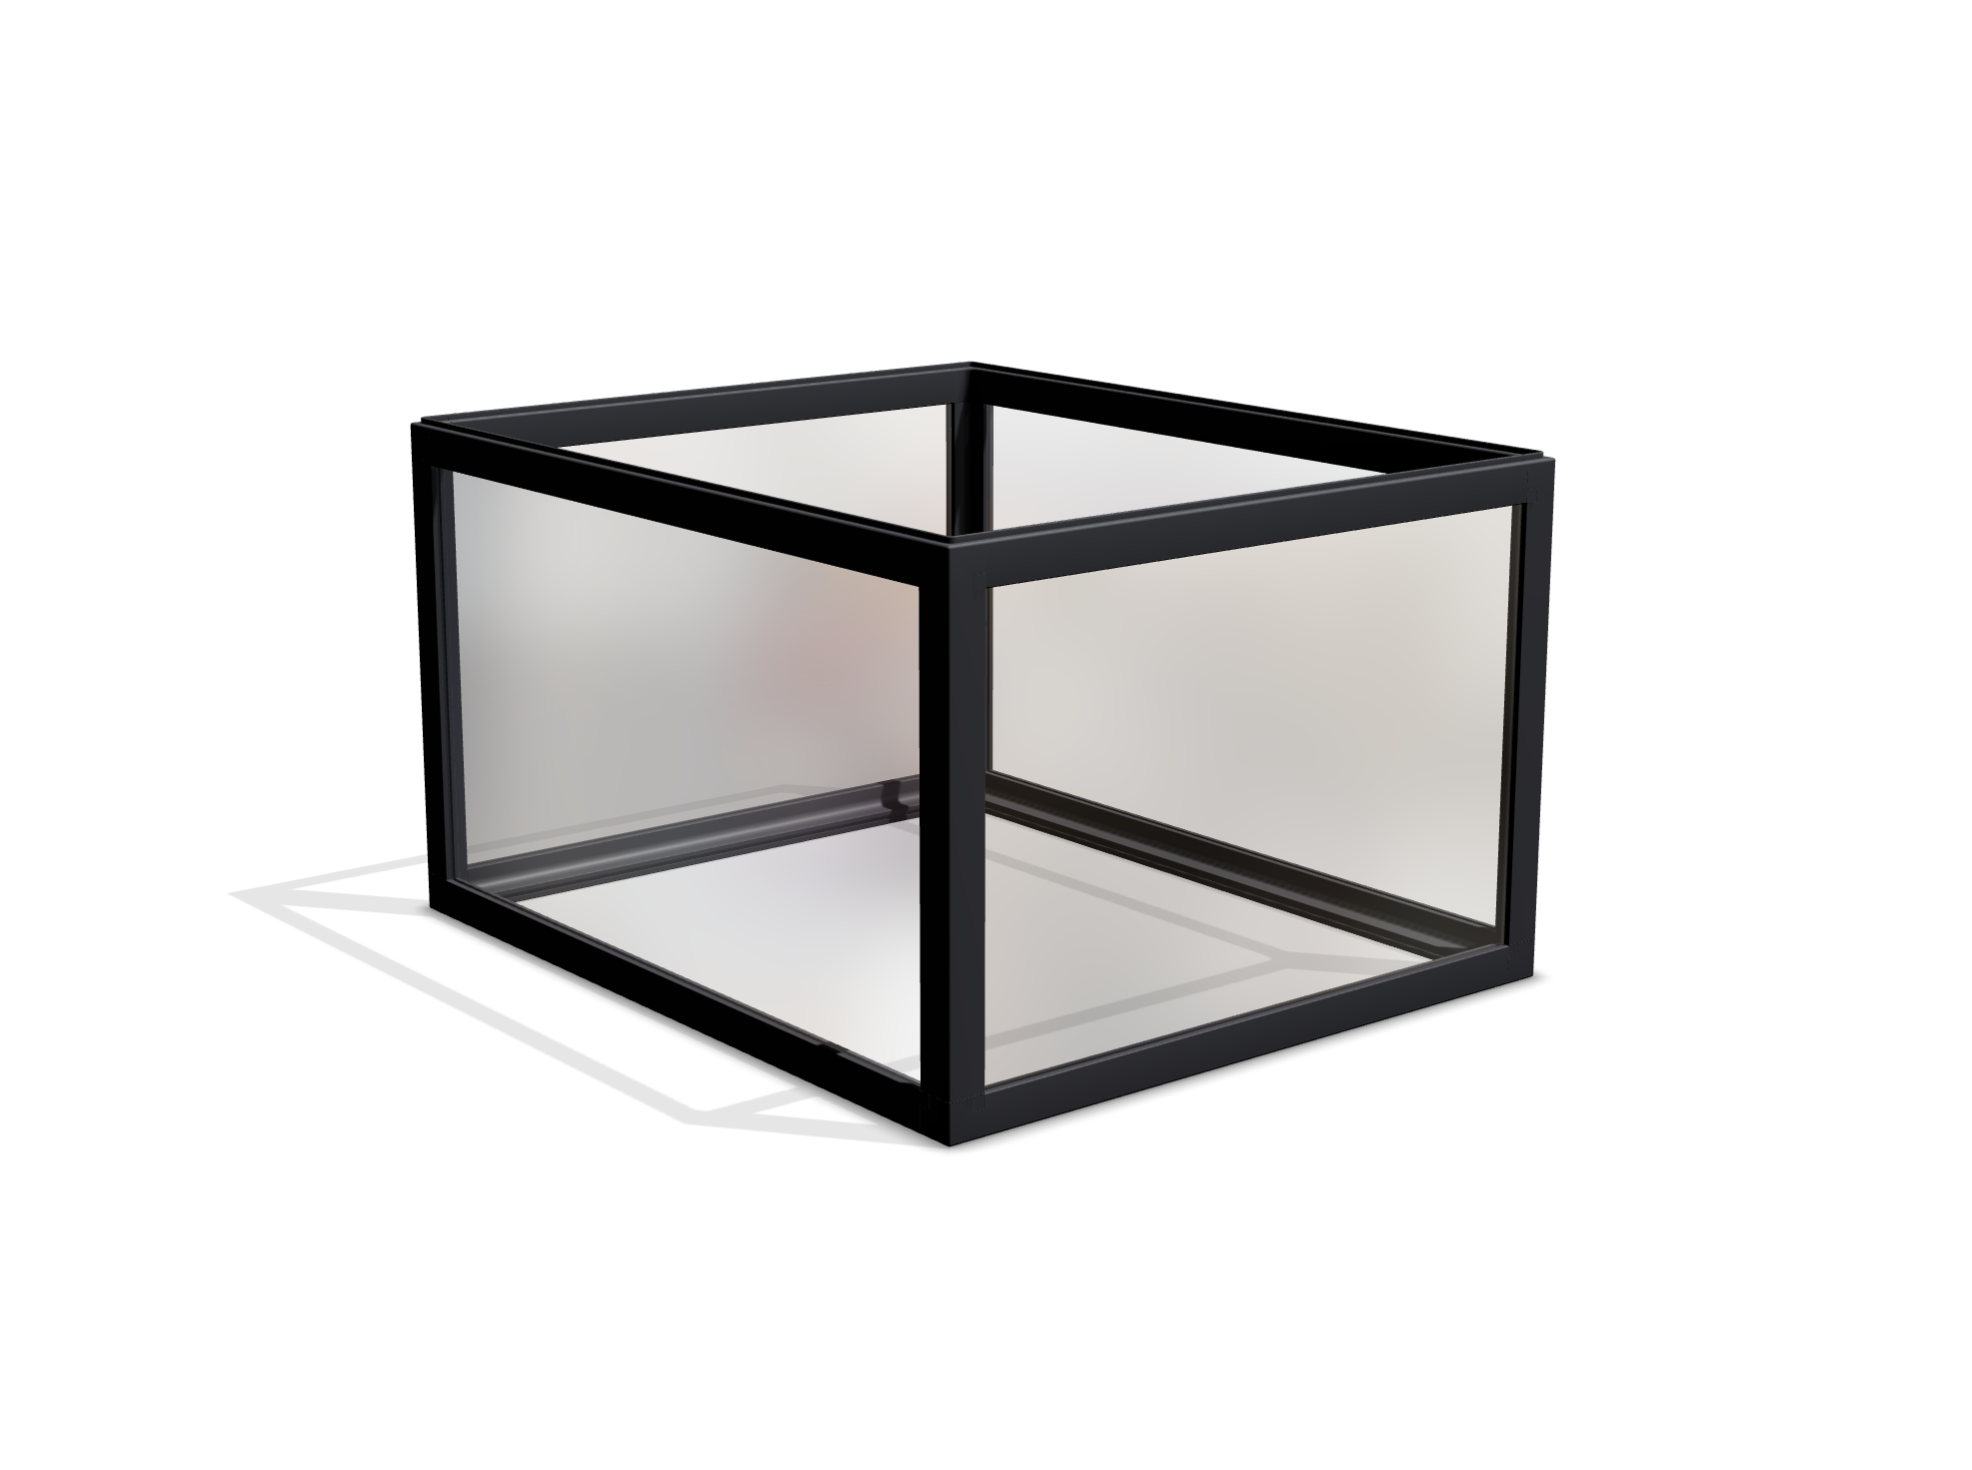 Quaderförmige boxula ohne Deckel mit Rahmenfarbe Rich Black und transparenten Acrylglass-Seitenwänden